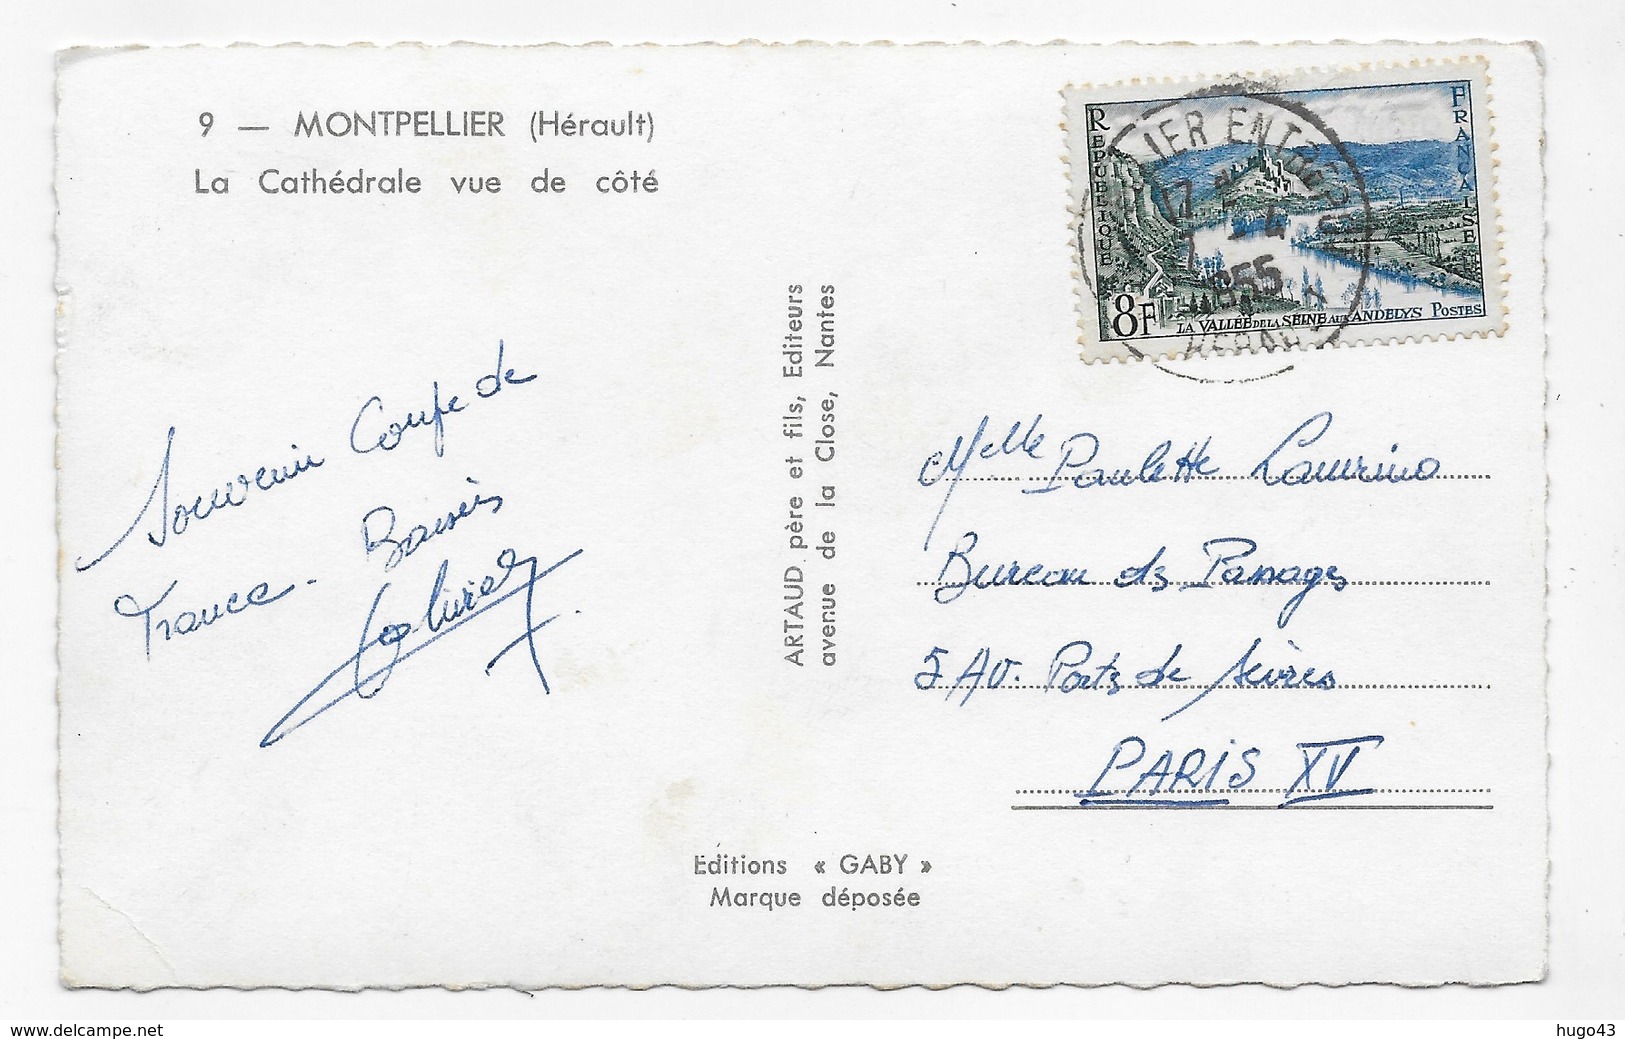 (RECTO / VERSO) MONTPELLIER EN 1955 - N° 9 - LA CATHEDRALE VUE DE COTE - BEAU TIMBRE - FORMAT CPA VOYAGEE - Montpellier